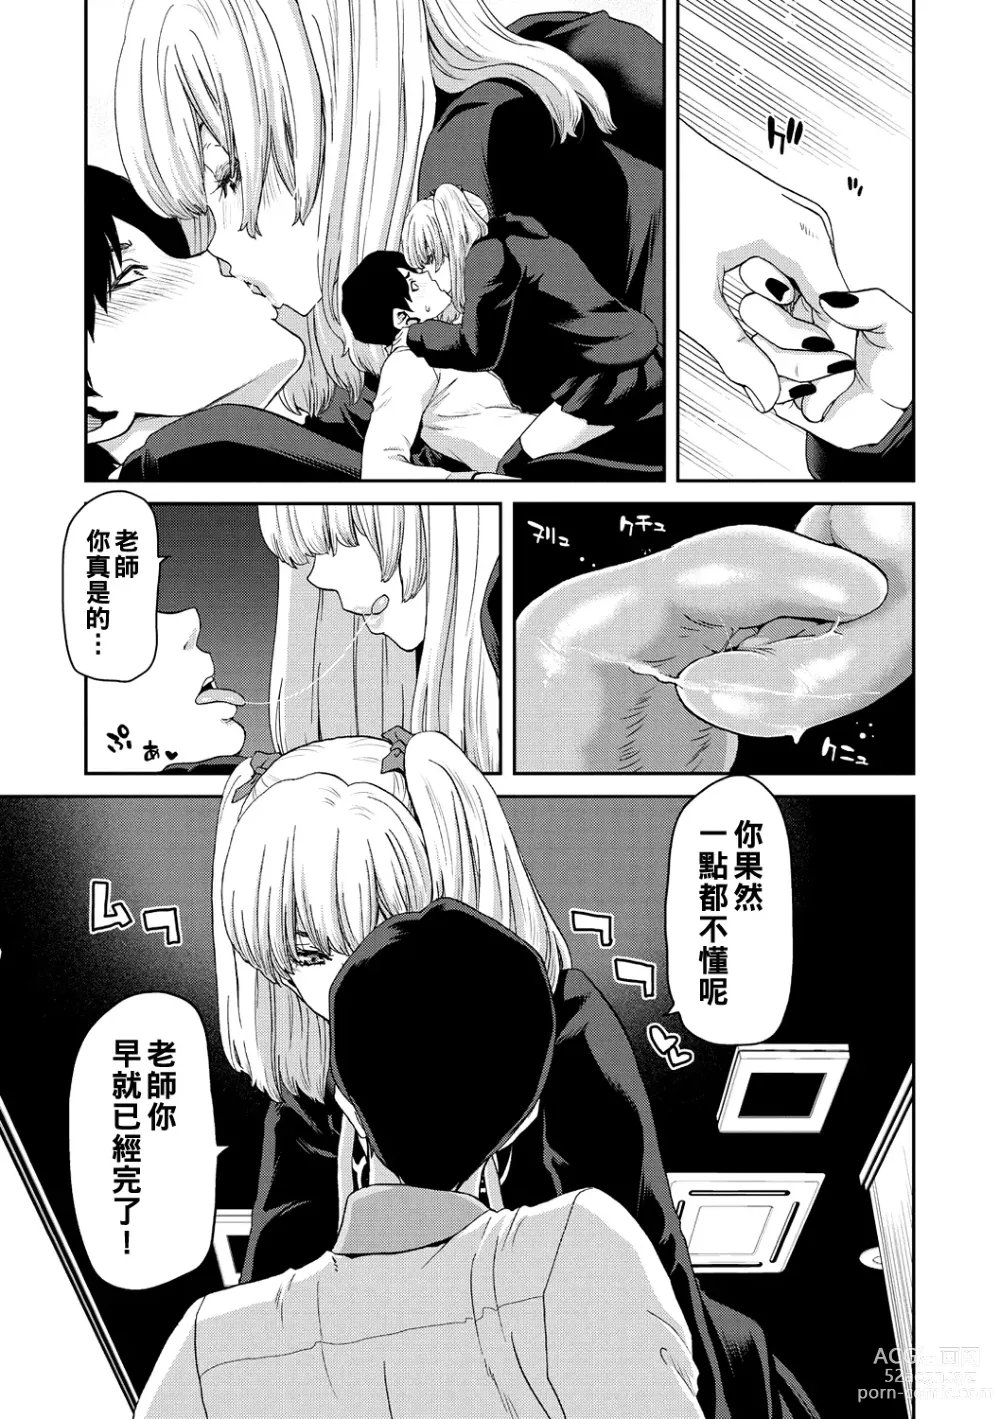 Page 13 of manga Shiyokka Hametsu SEX